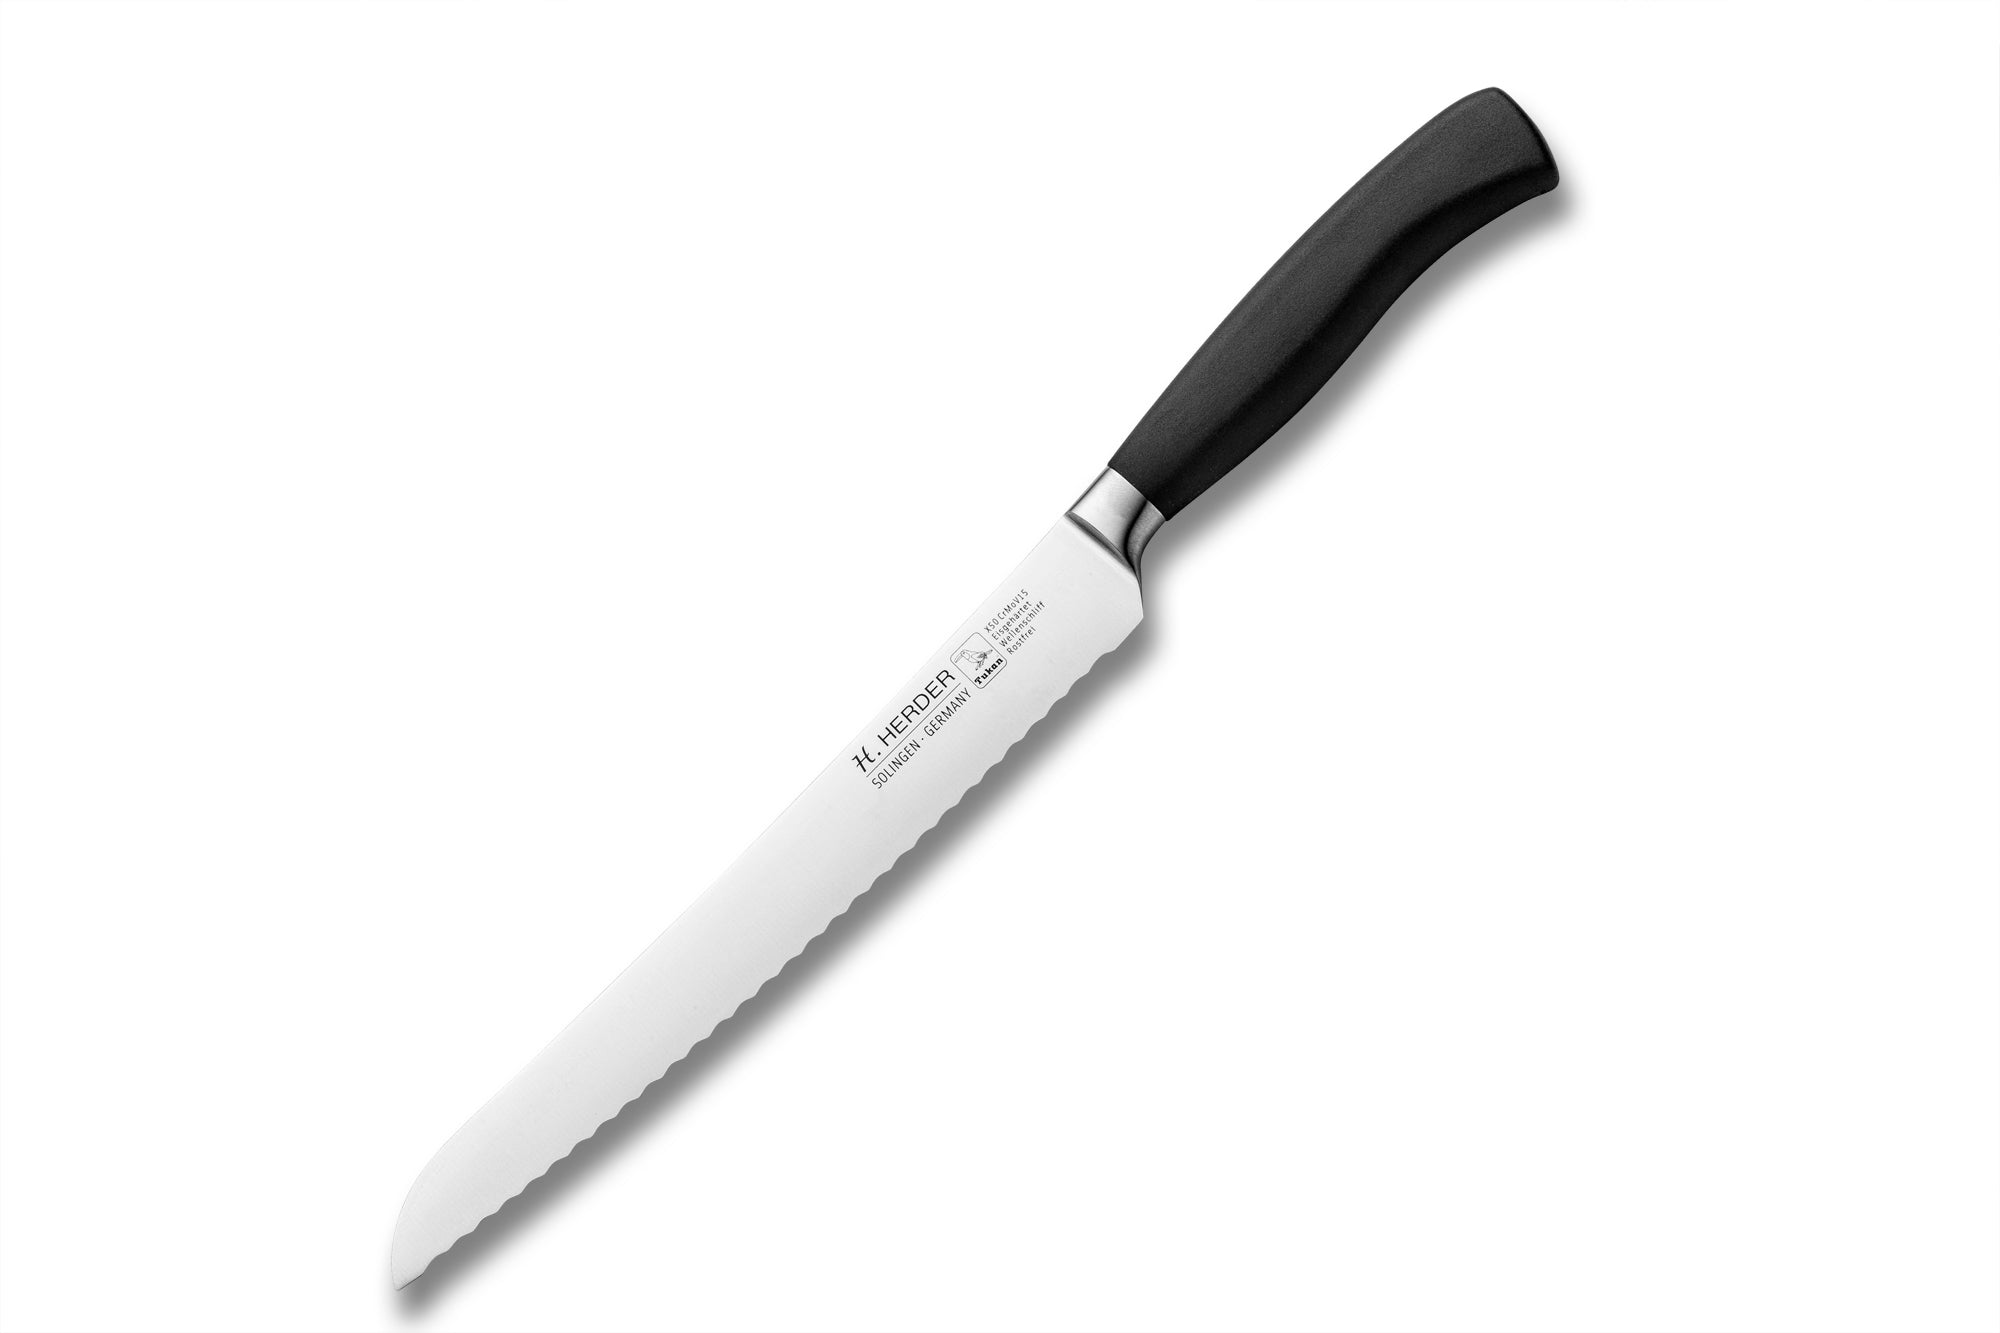 Couteau à pain Eterno Gastro, avec lame ondulée, longueur de lame 20cm